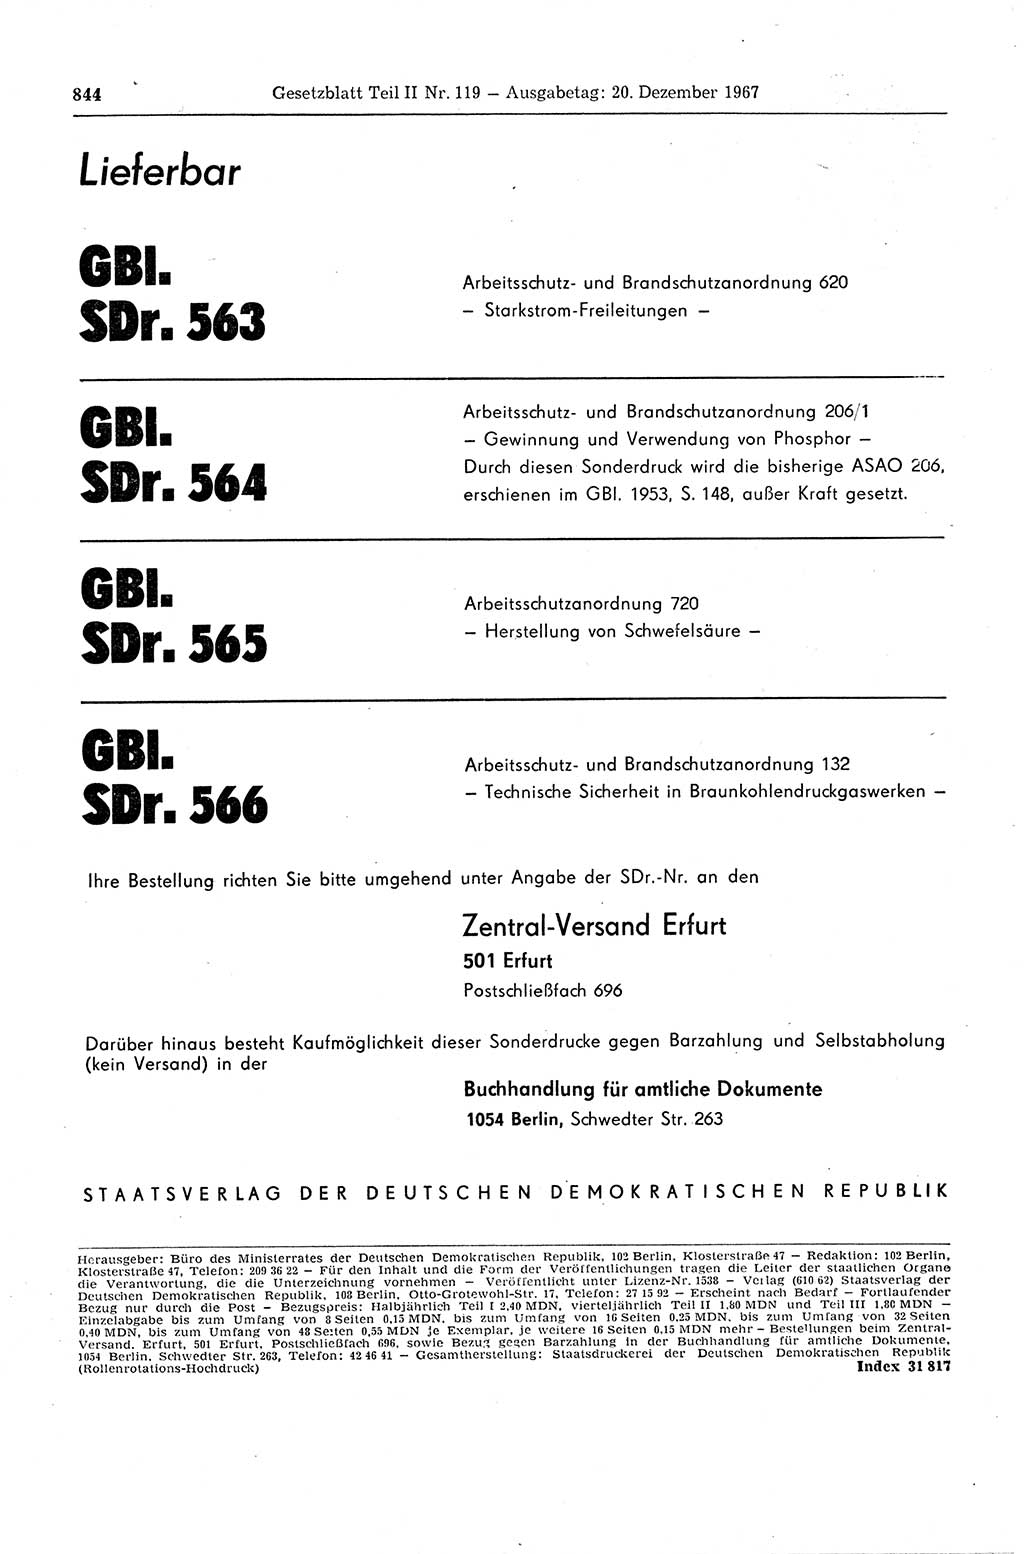 Gesetzblatt (GBl.) der Deutschen Demokratischen Republik (DDR) Teil ⅠⅠ 1967, Seite 844 (GBl. DDR ⅠⅠ 1967, S. 844)